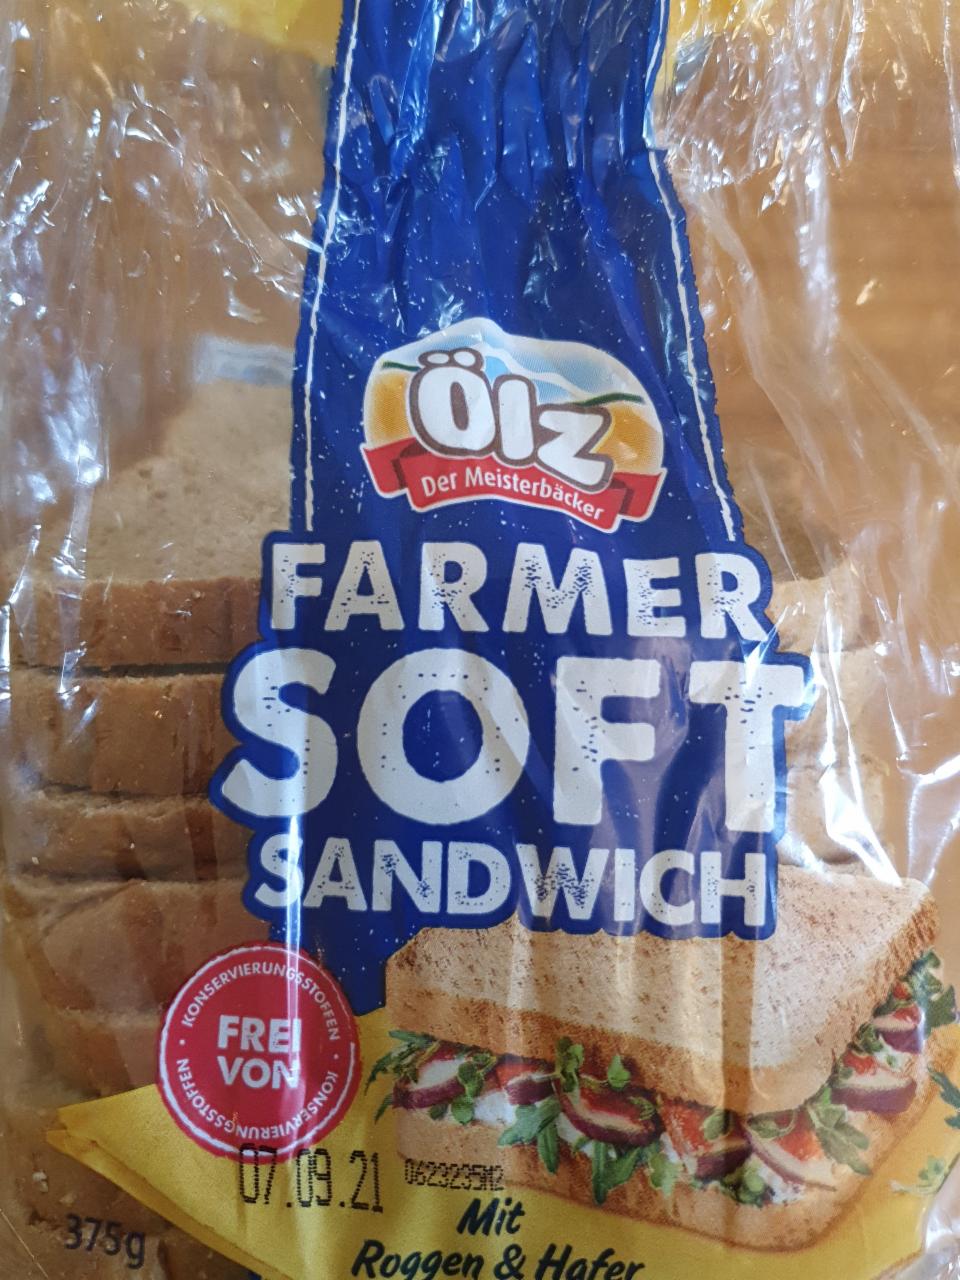 Fotografie - Farmer Soft Sandwich Mit Roggen under Hafer